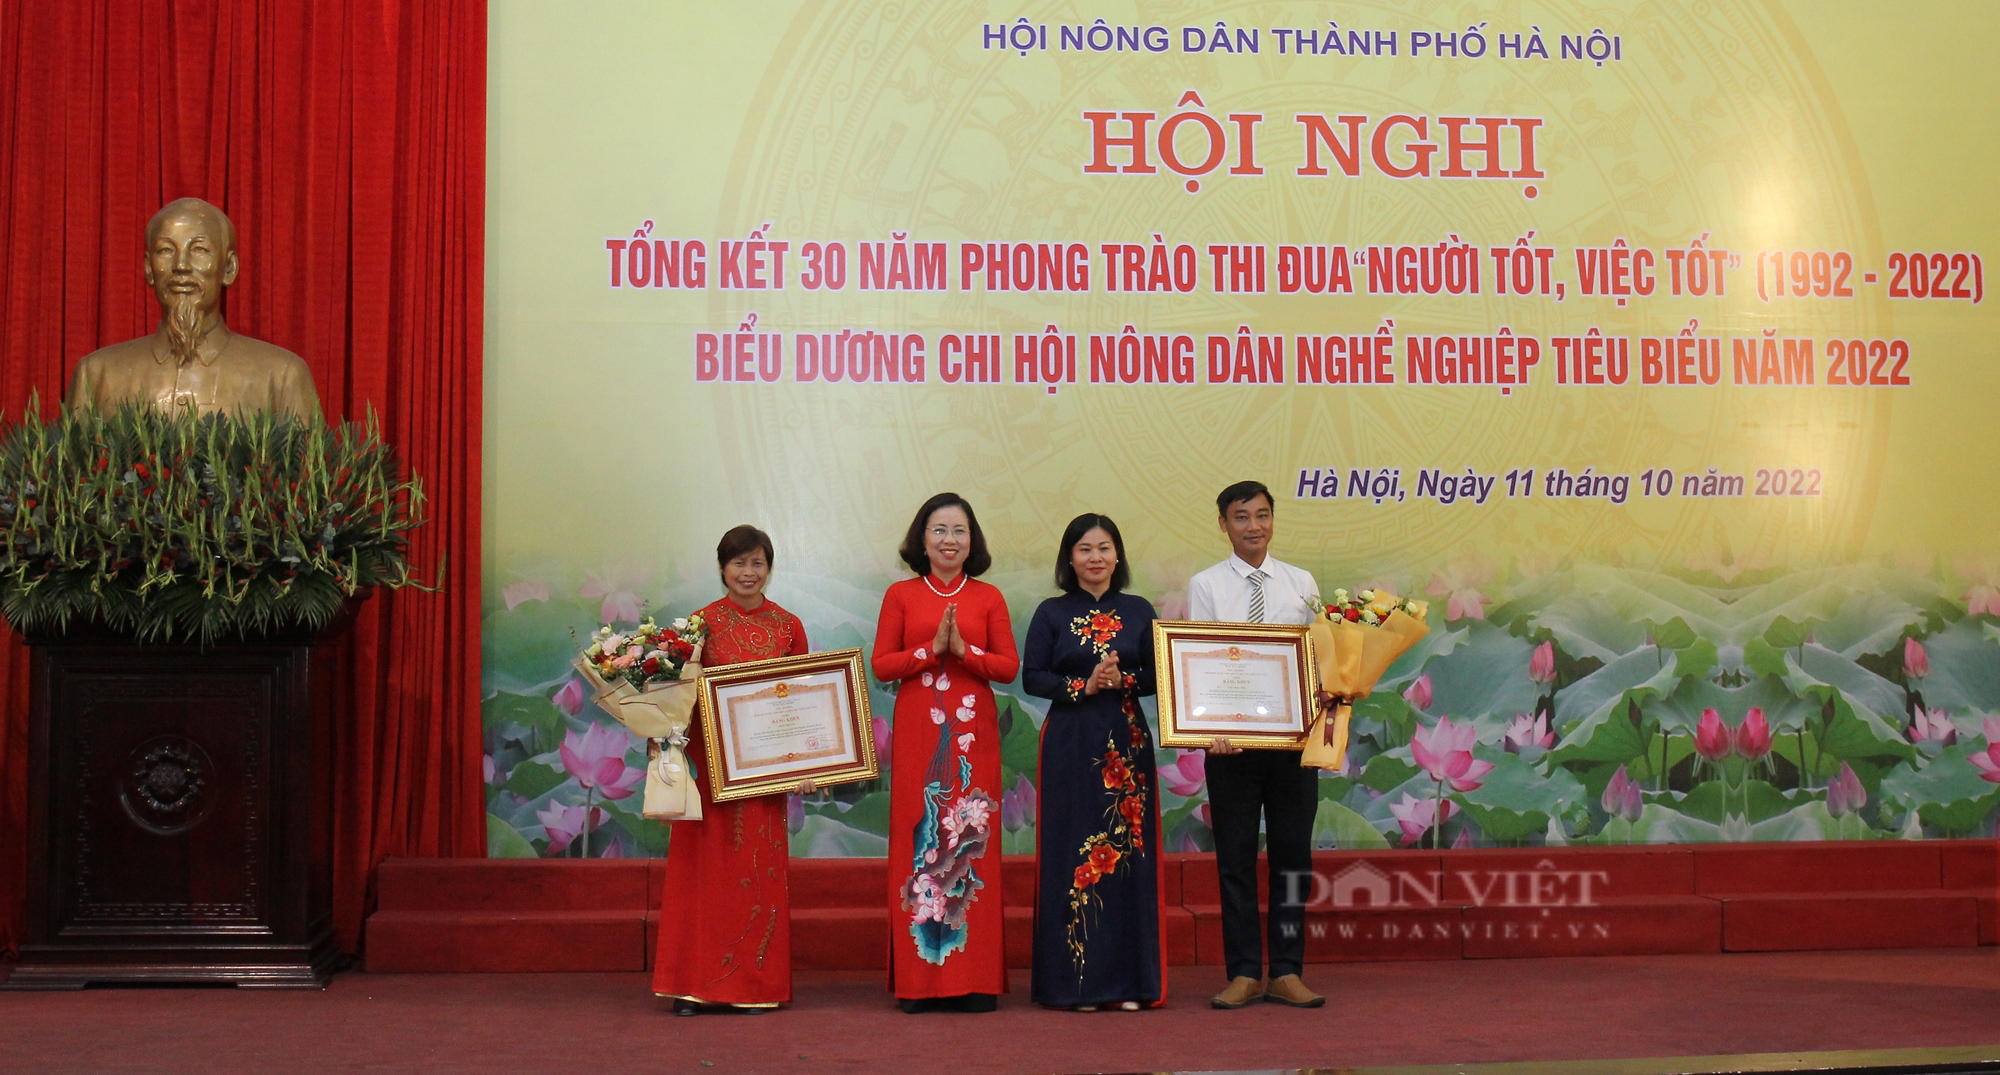 Nuôi gà giỏi có doanh thu 10 tỷ đồng, một nông dân Hà Nội được Thủ tướng Chính phủ tặng Bằng khen - Ảnh 1.